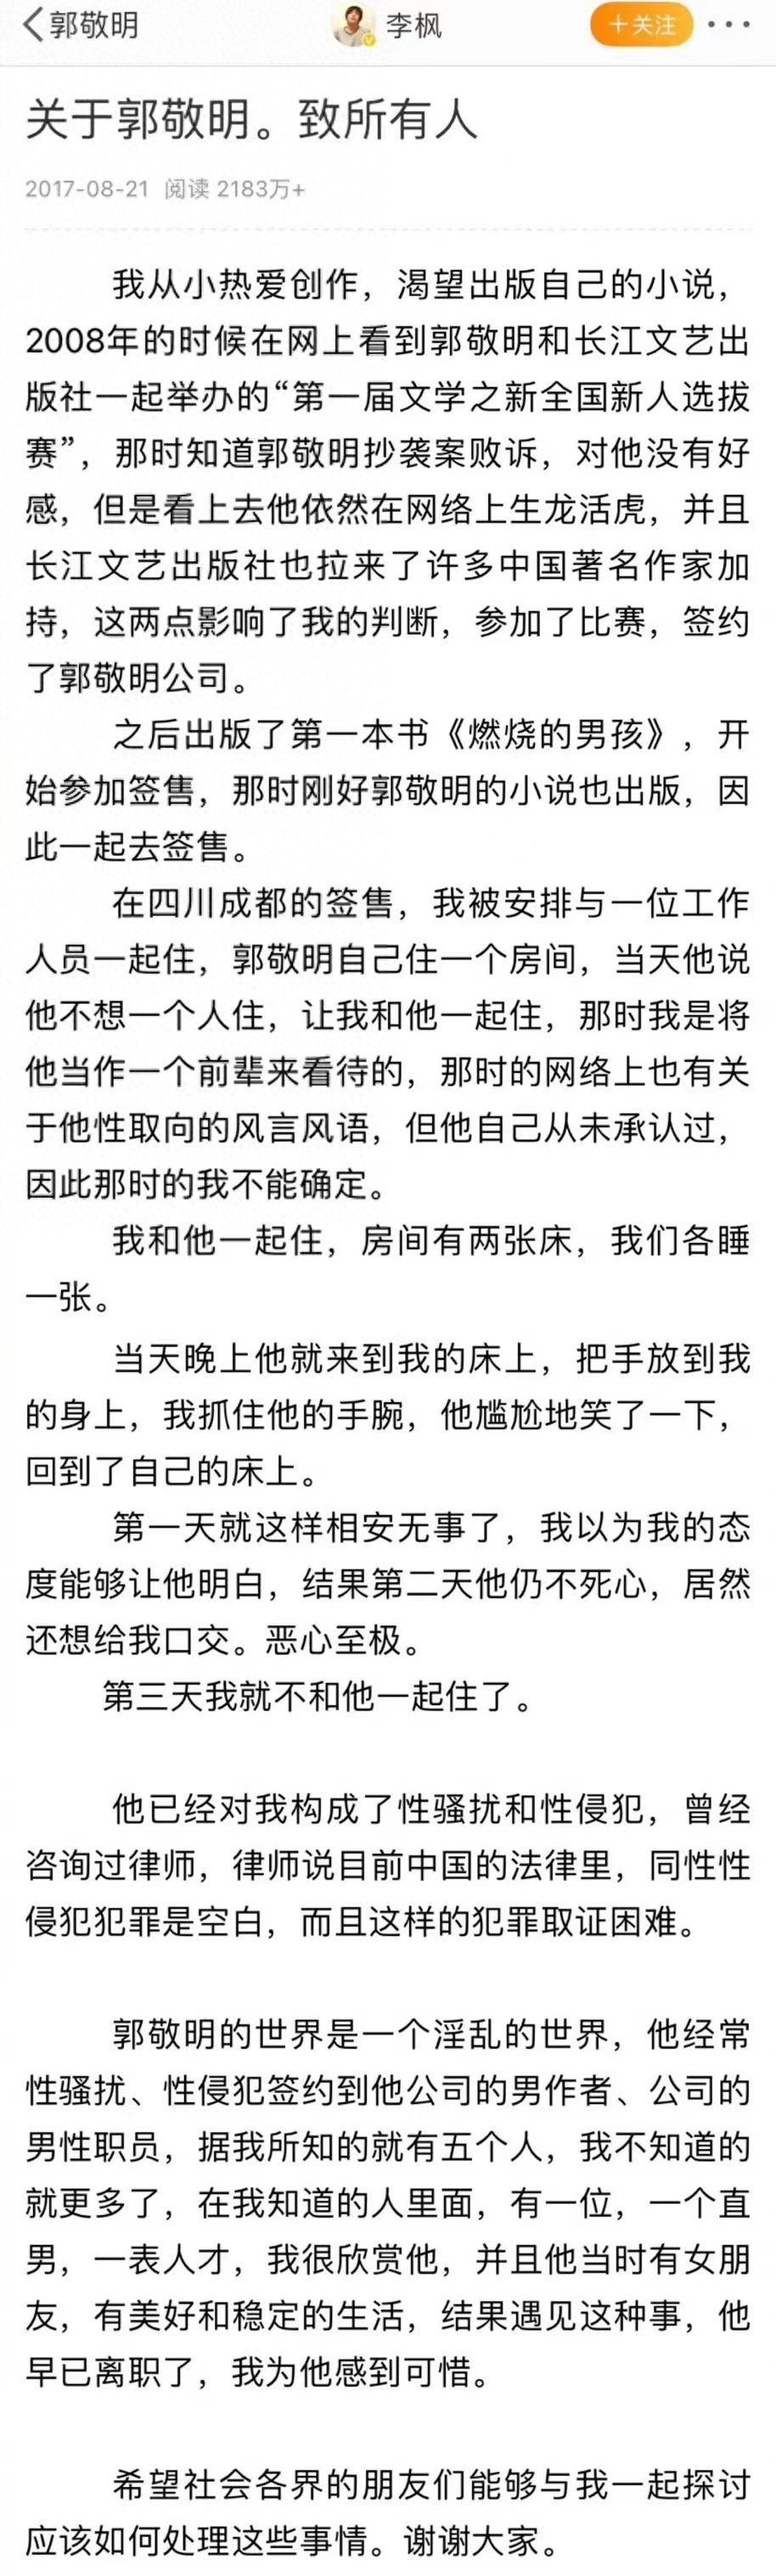 六年前郭敬明起诉李枫诽谤罪被驳回，李枫再